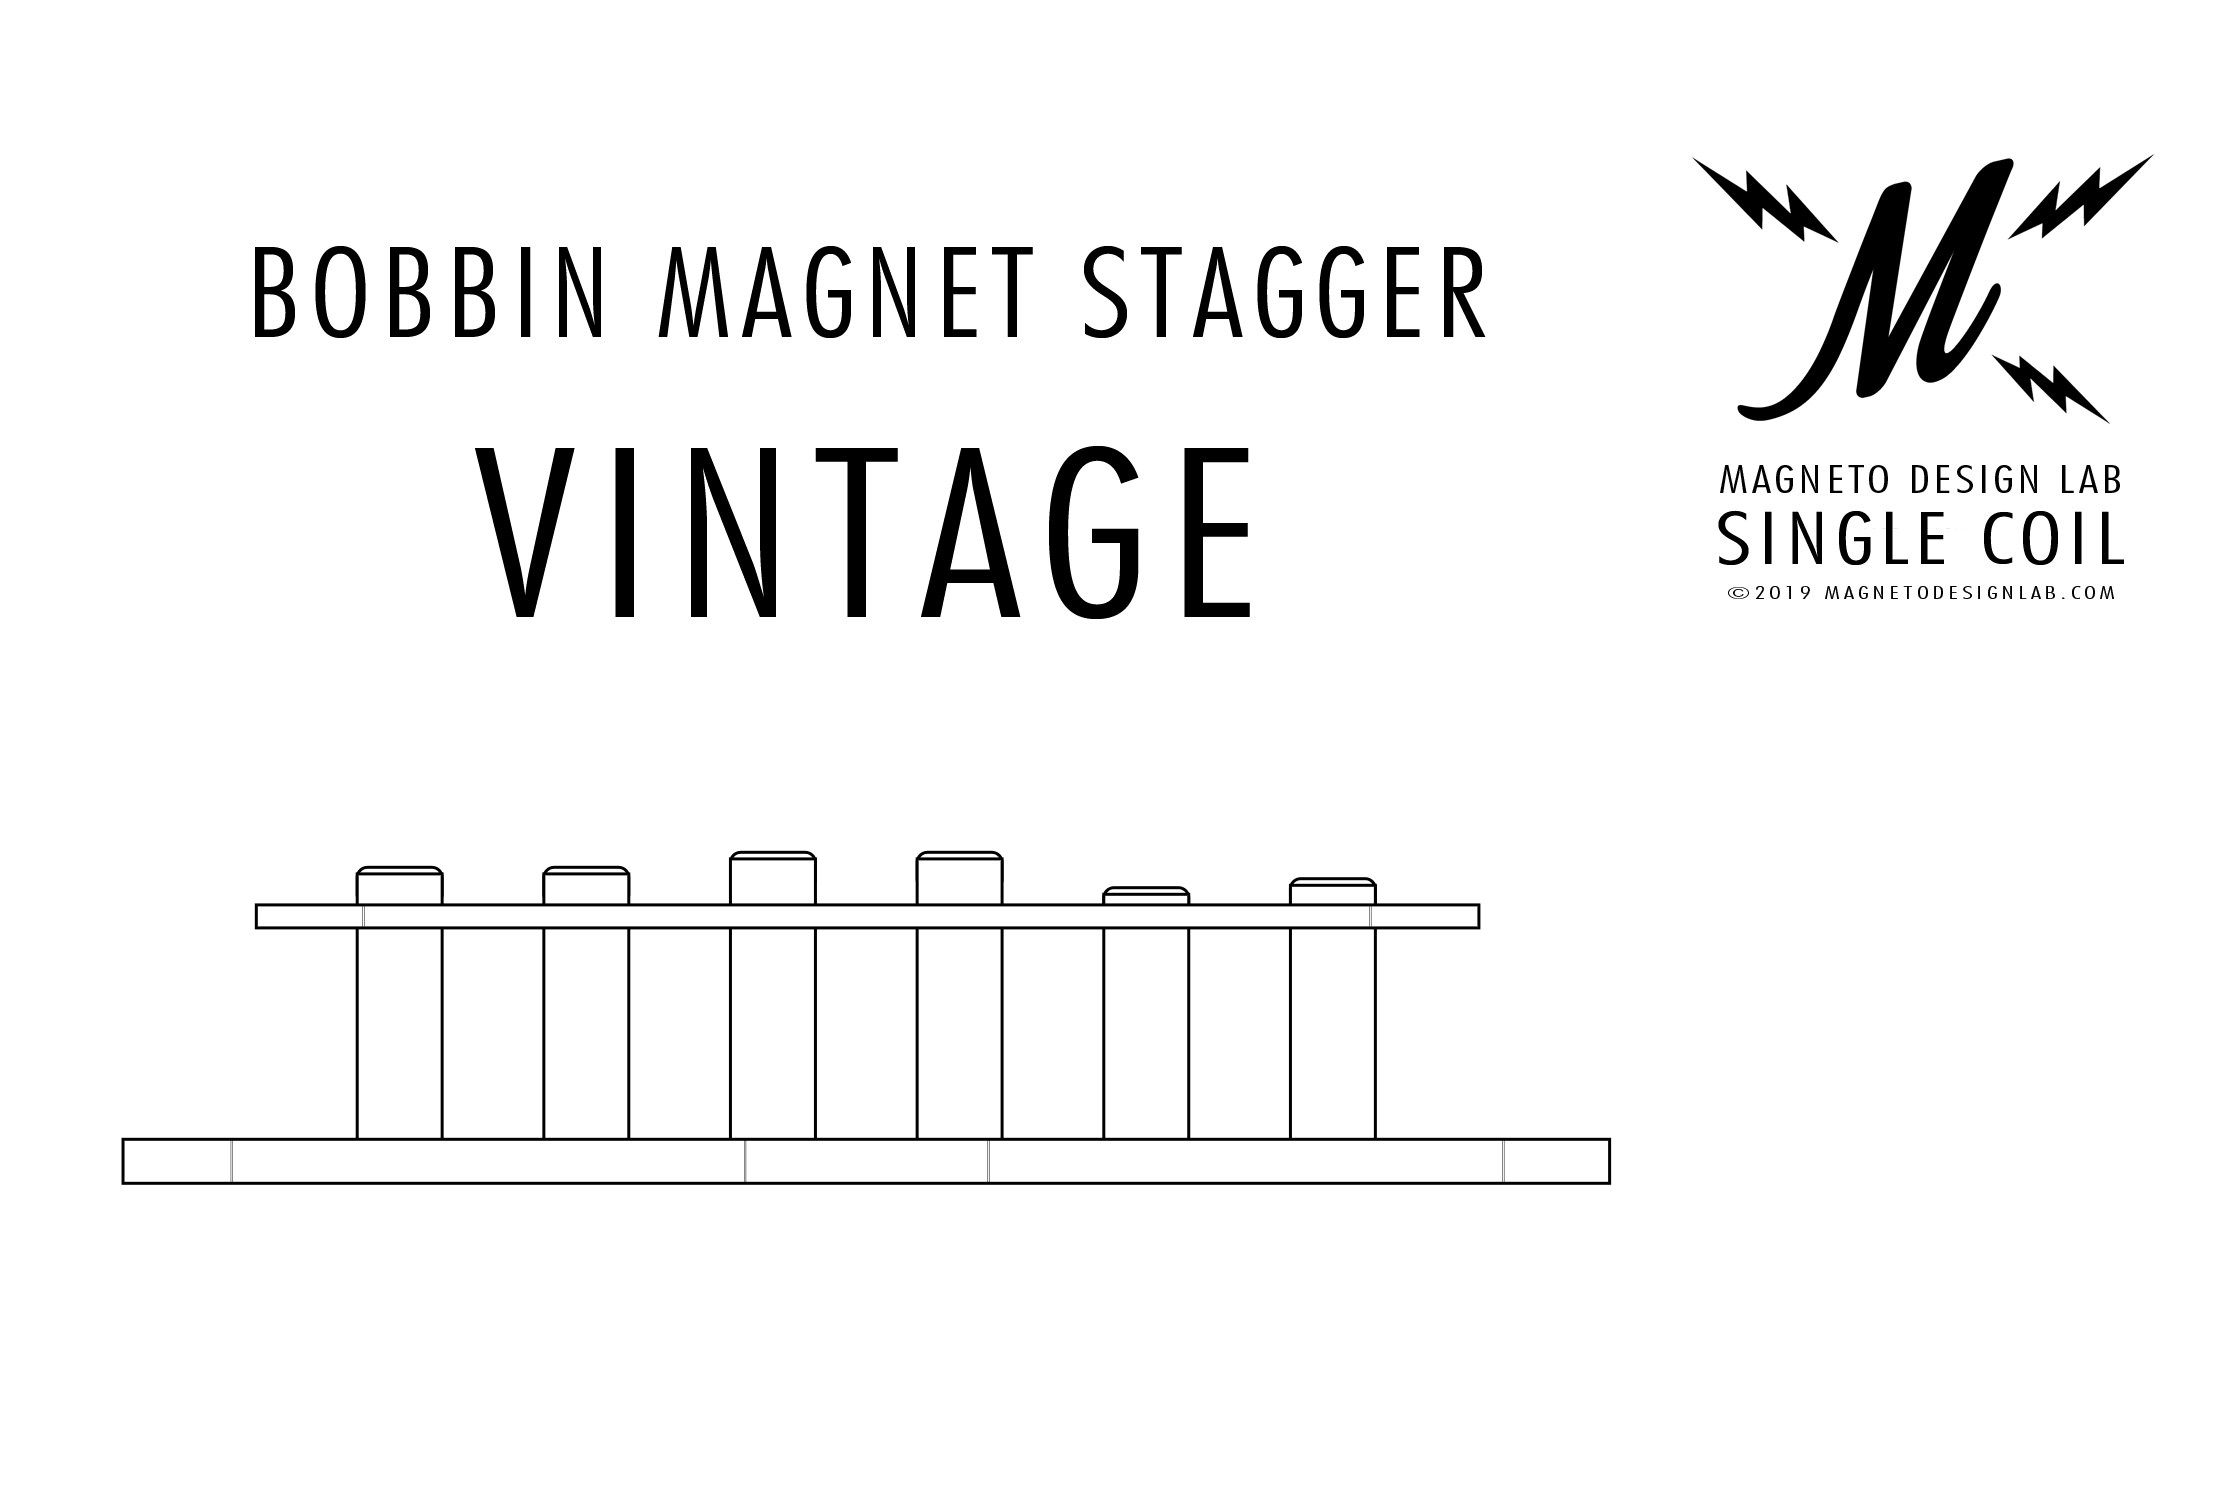 Bobbin-Magnet-Stagger-Vintage-Magneto-Design-Lab-Single-Coil-Style-Guitar-Pickup.jpg